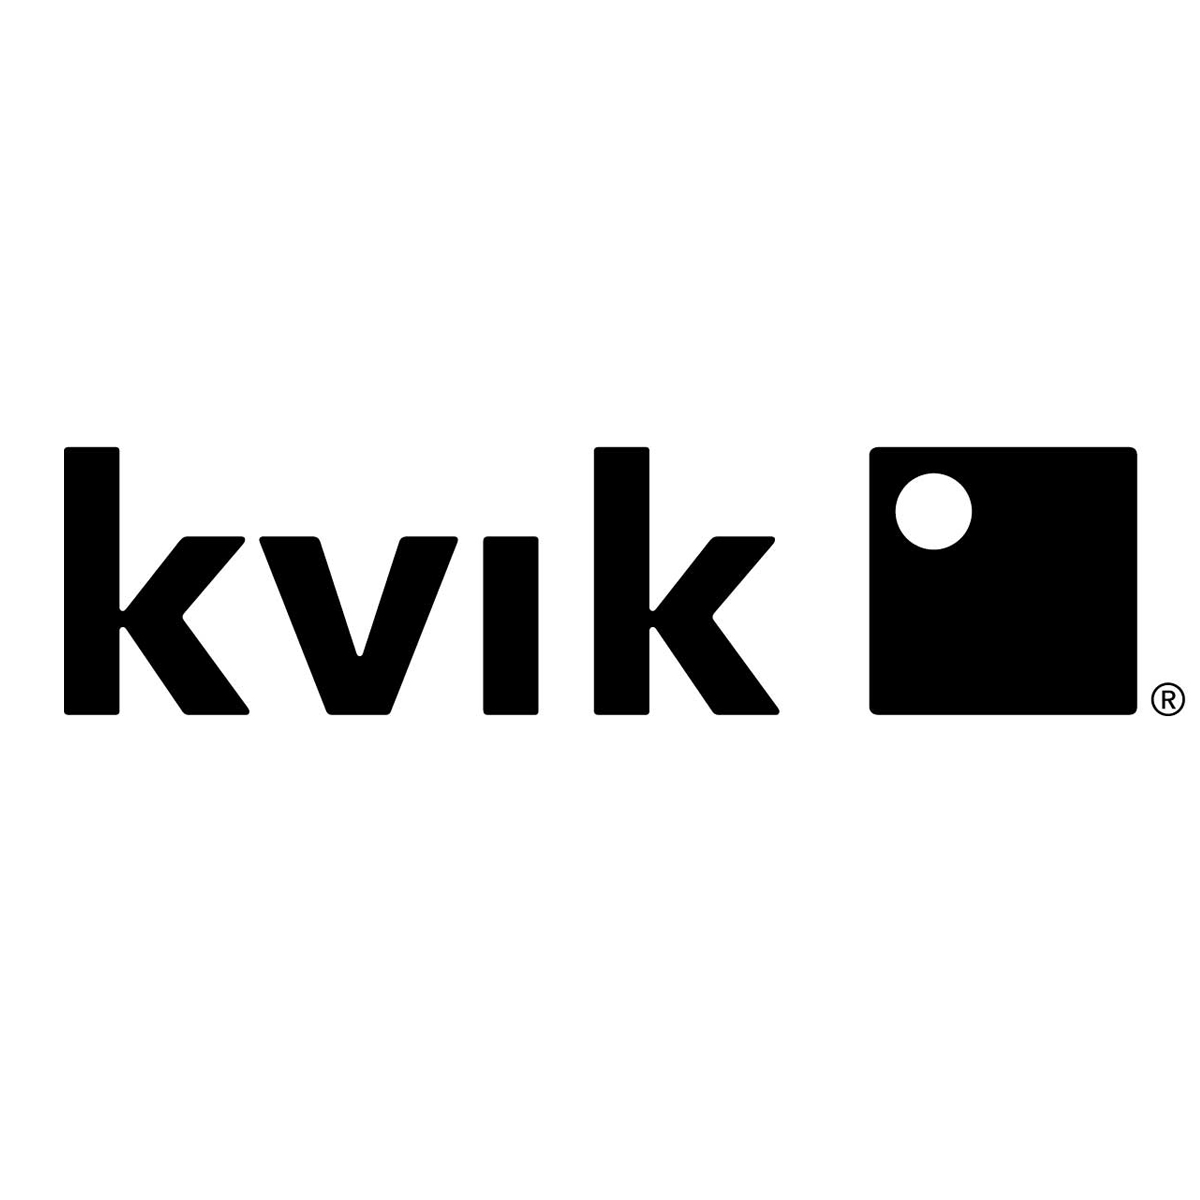 KVIK har fået hjælp til legendarisk lederskab af Rikke Hartmann-Bossen